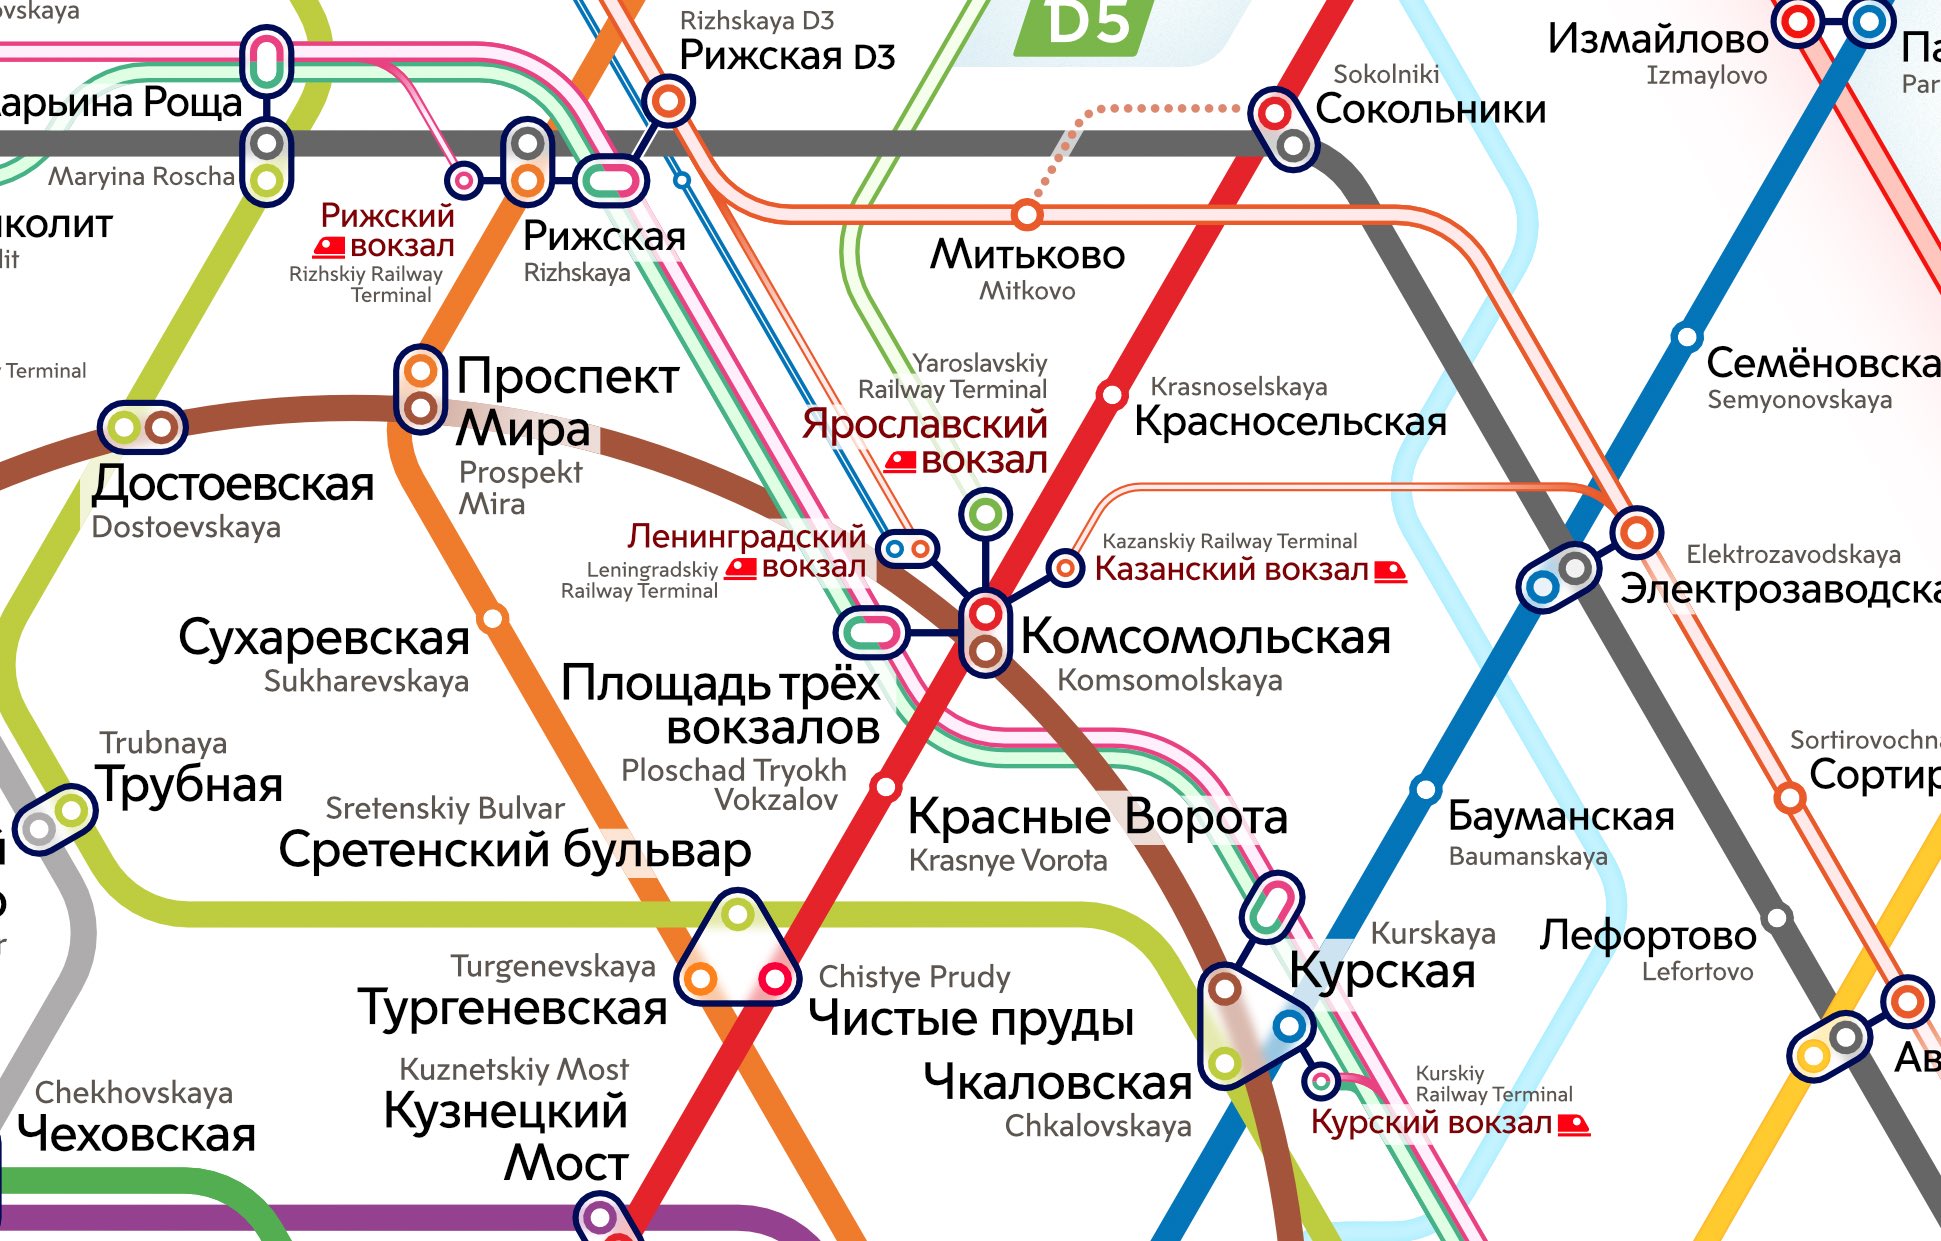 Метро возле вокзала москва. Схема метро Москвы площадь трех вокзалов. Площадь трёх вокзалов в Москве метро. Площадь трех вокзалов схема. Площадь трёх вокзалов в Москве метро на карте.